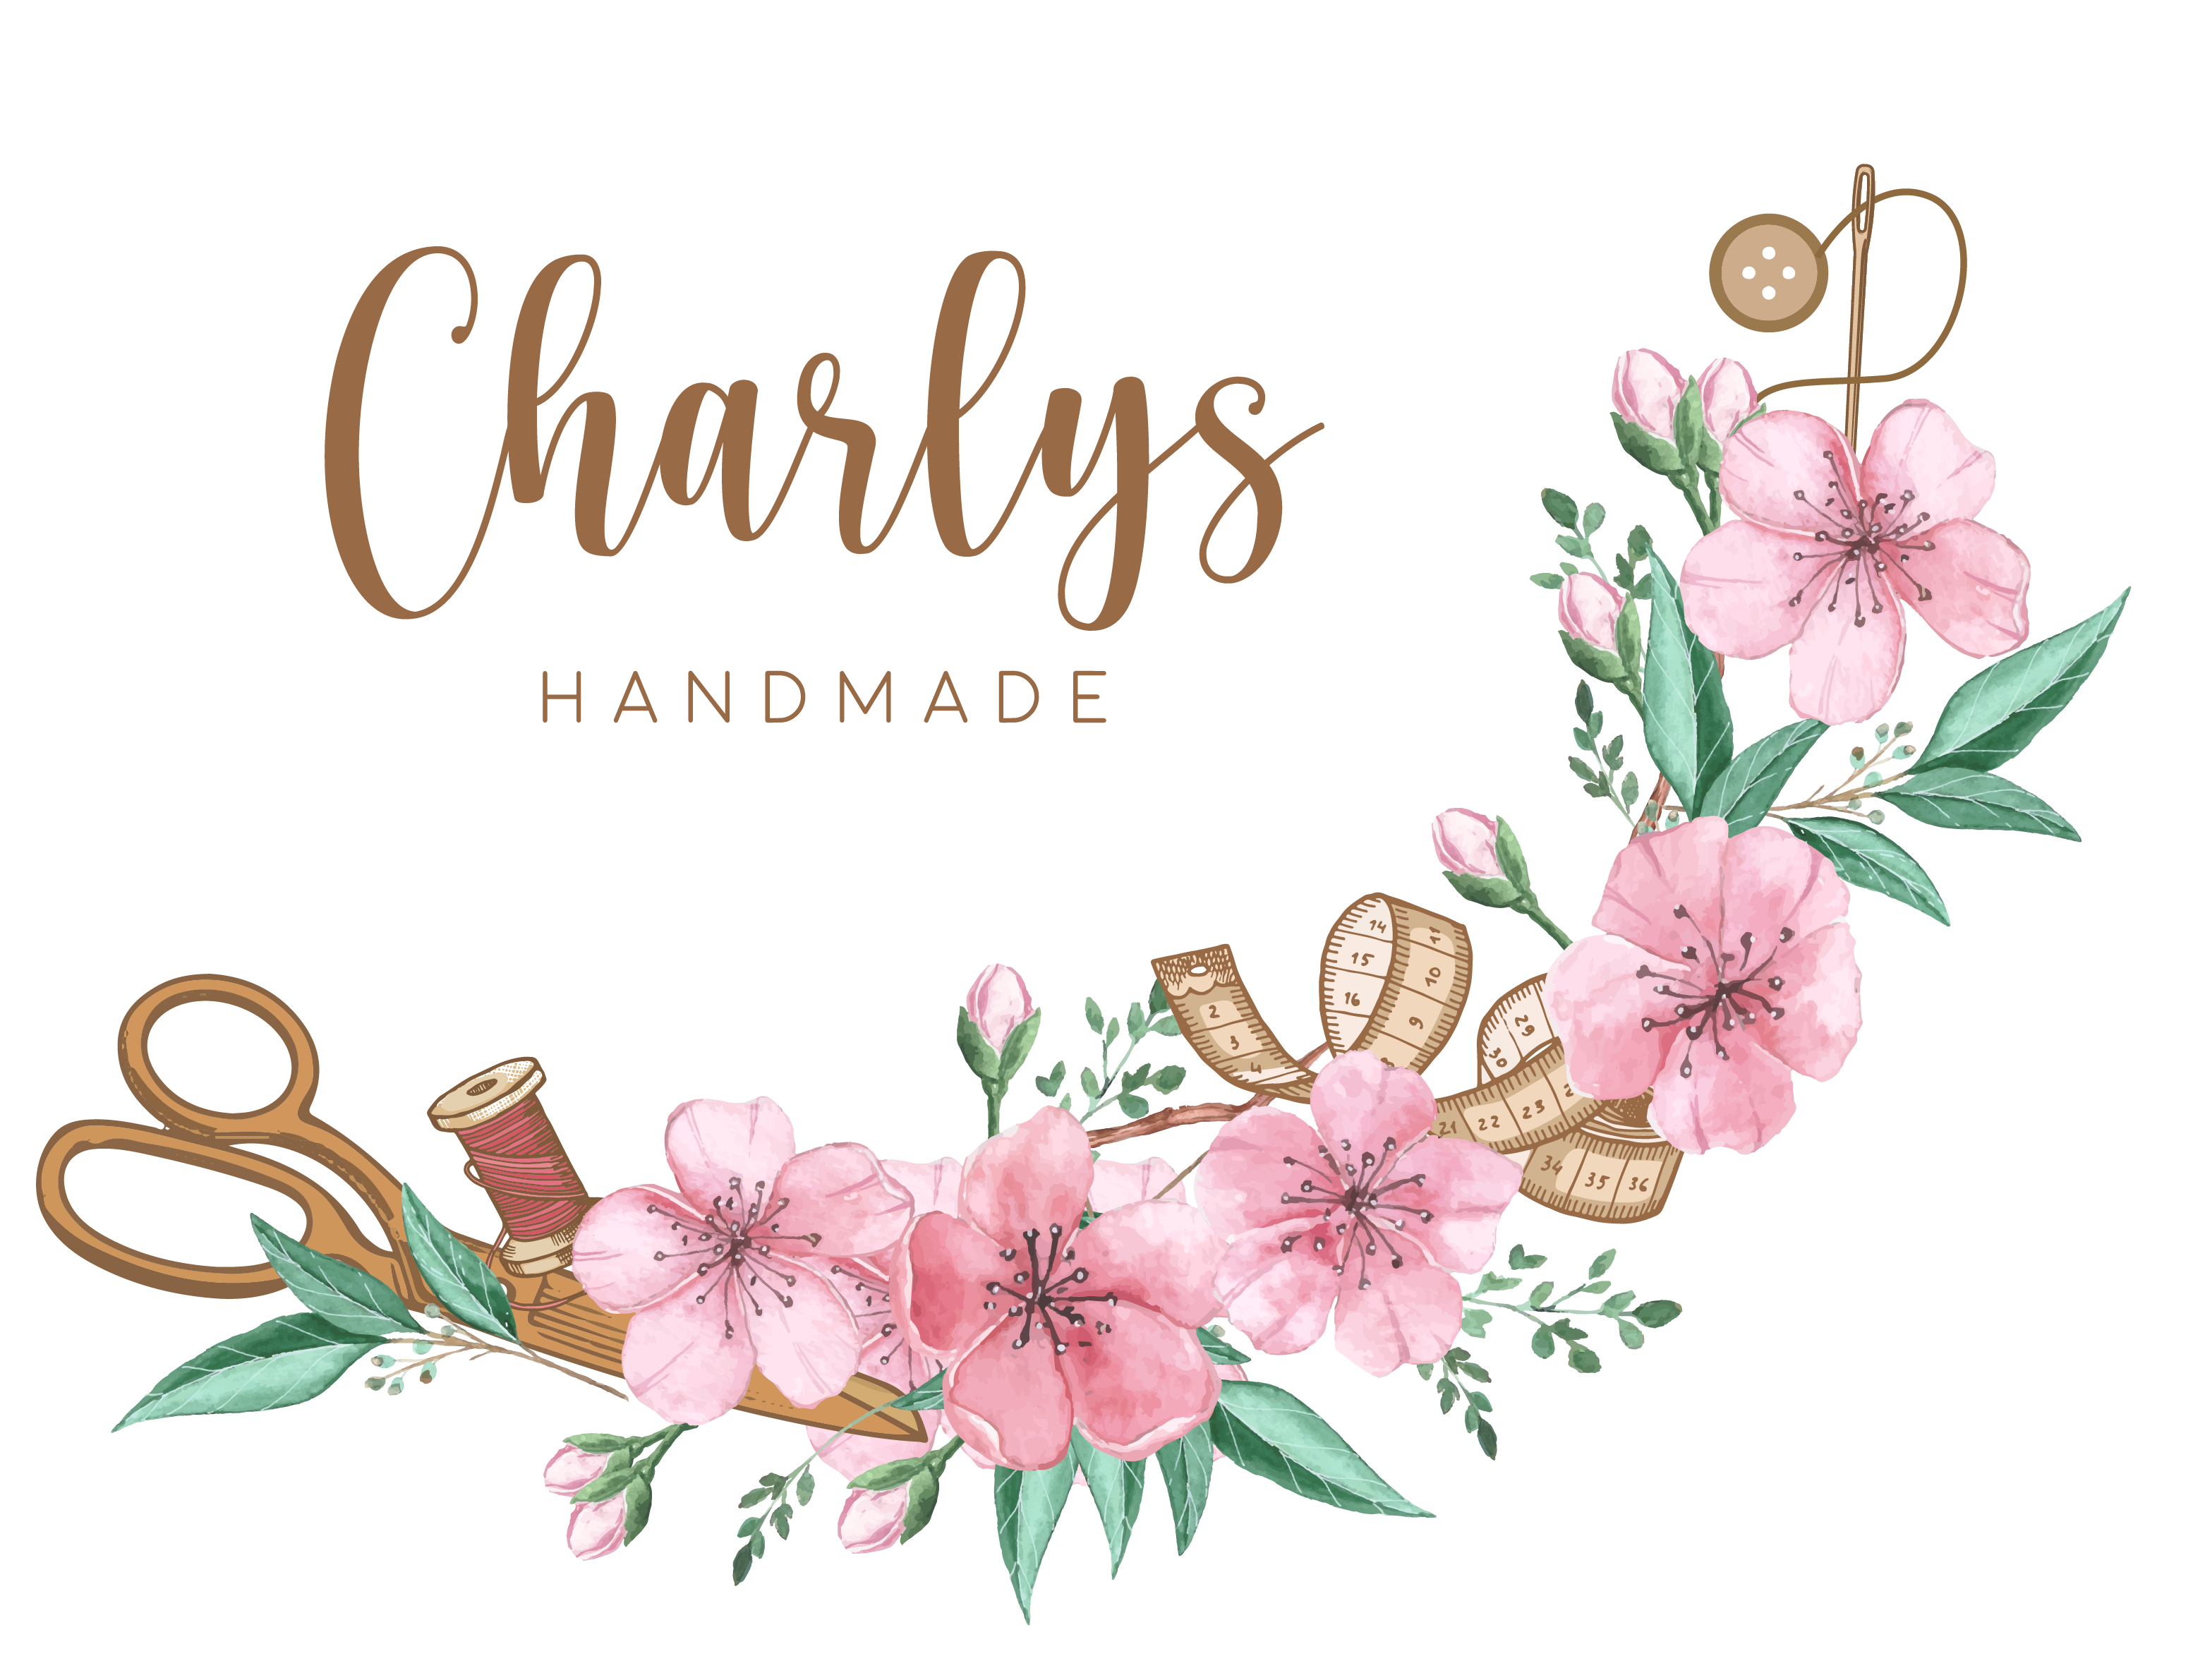 Charlys Handmade